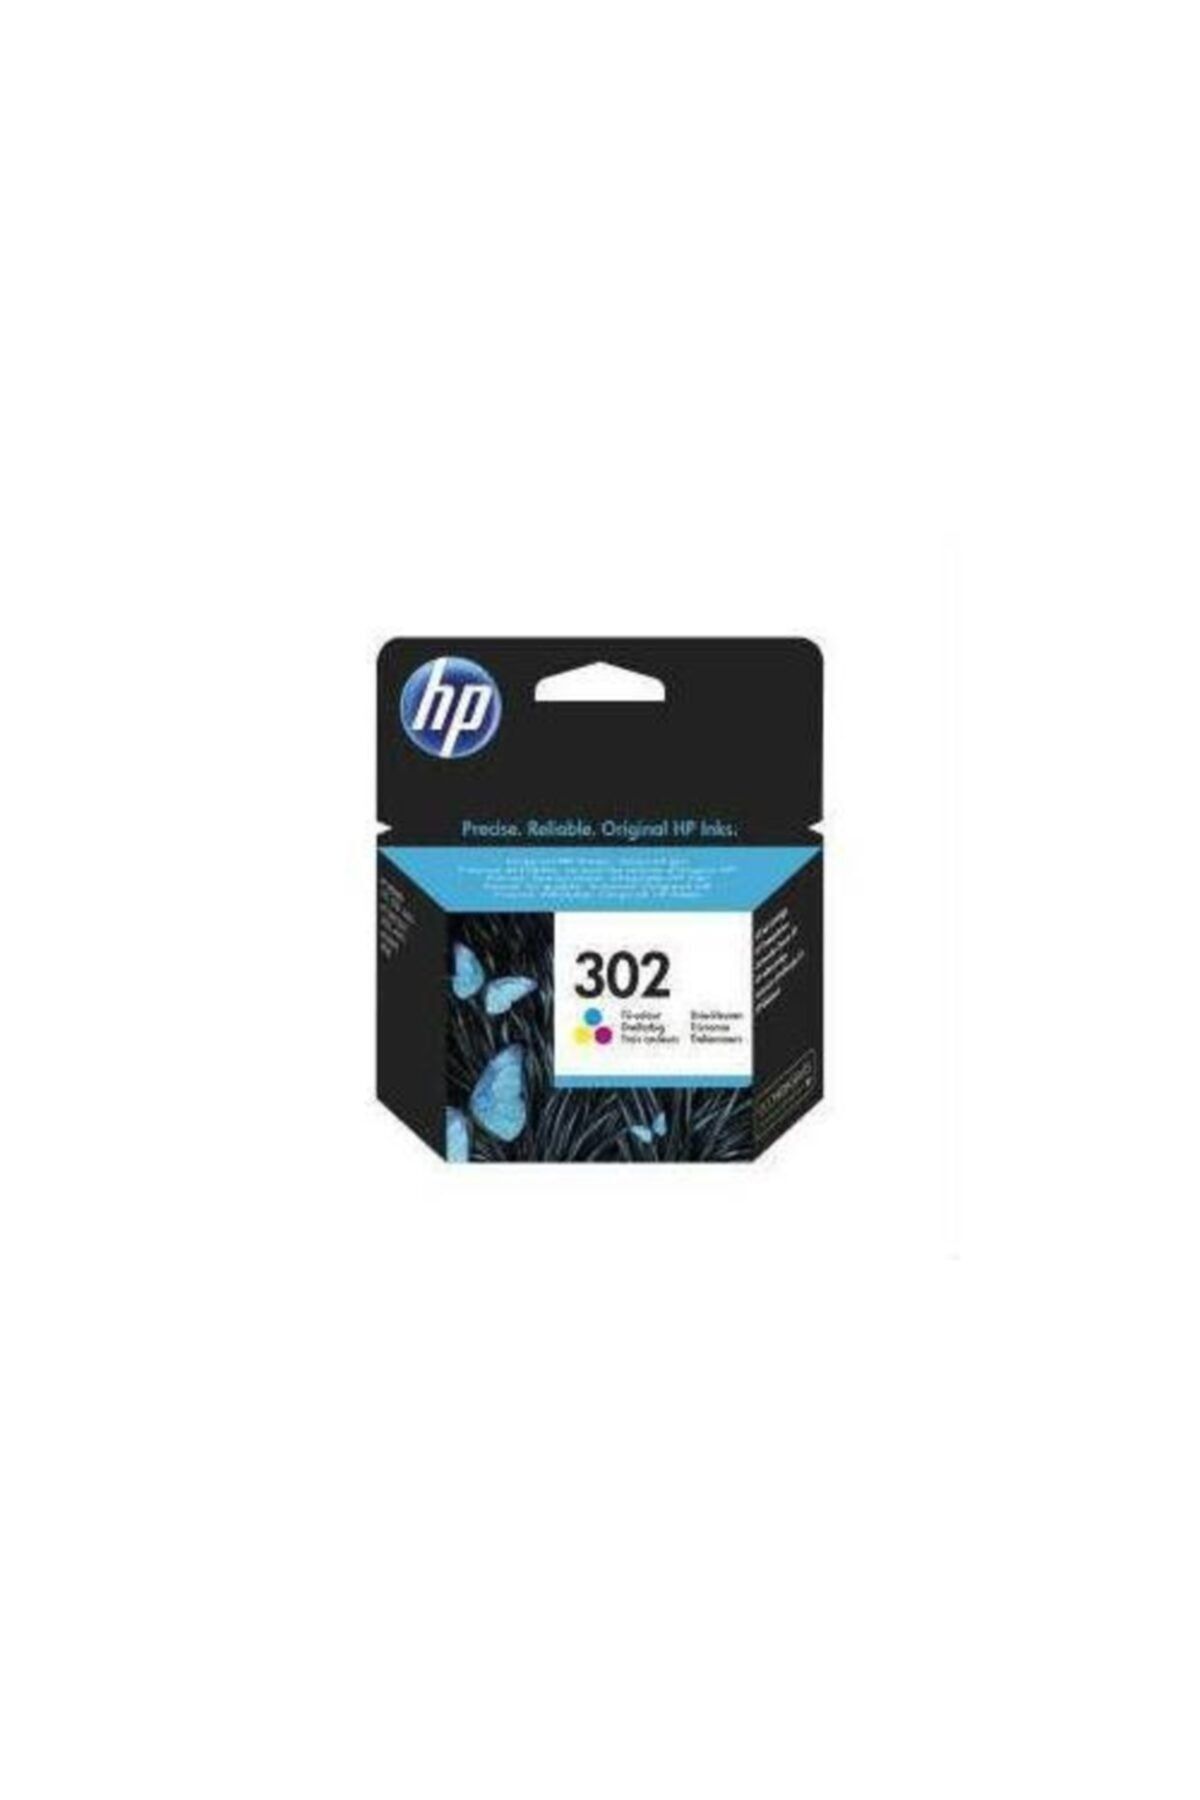 HP 302 Kartuş Renkli Orjinal Deskjet 1110/2130/3630/3830 F6u65ae